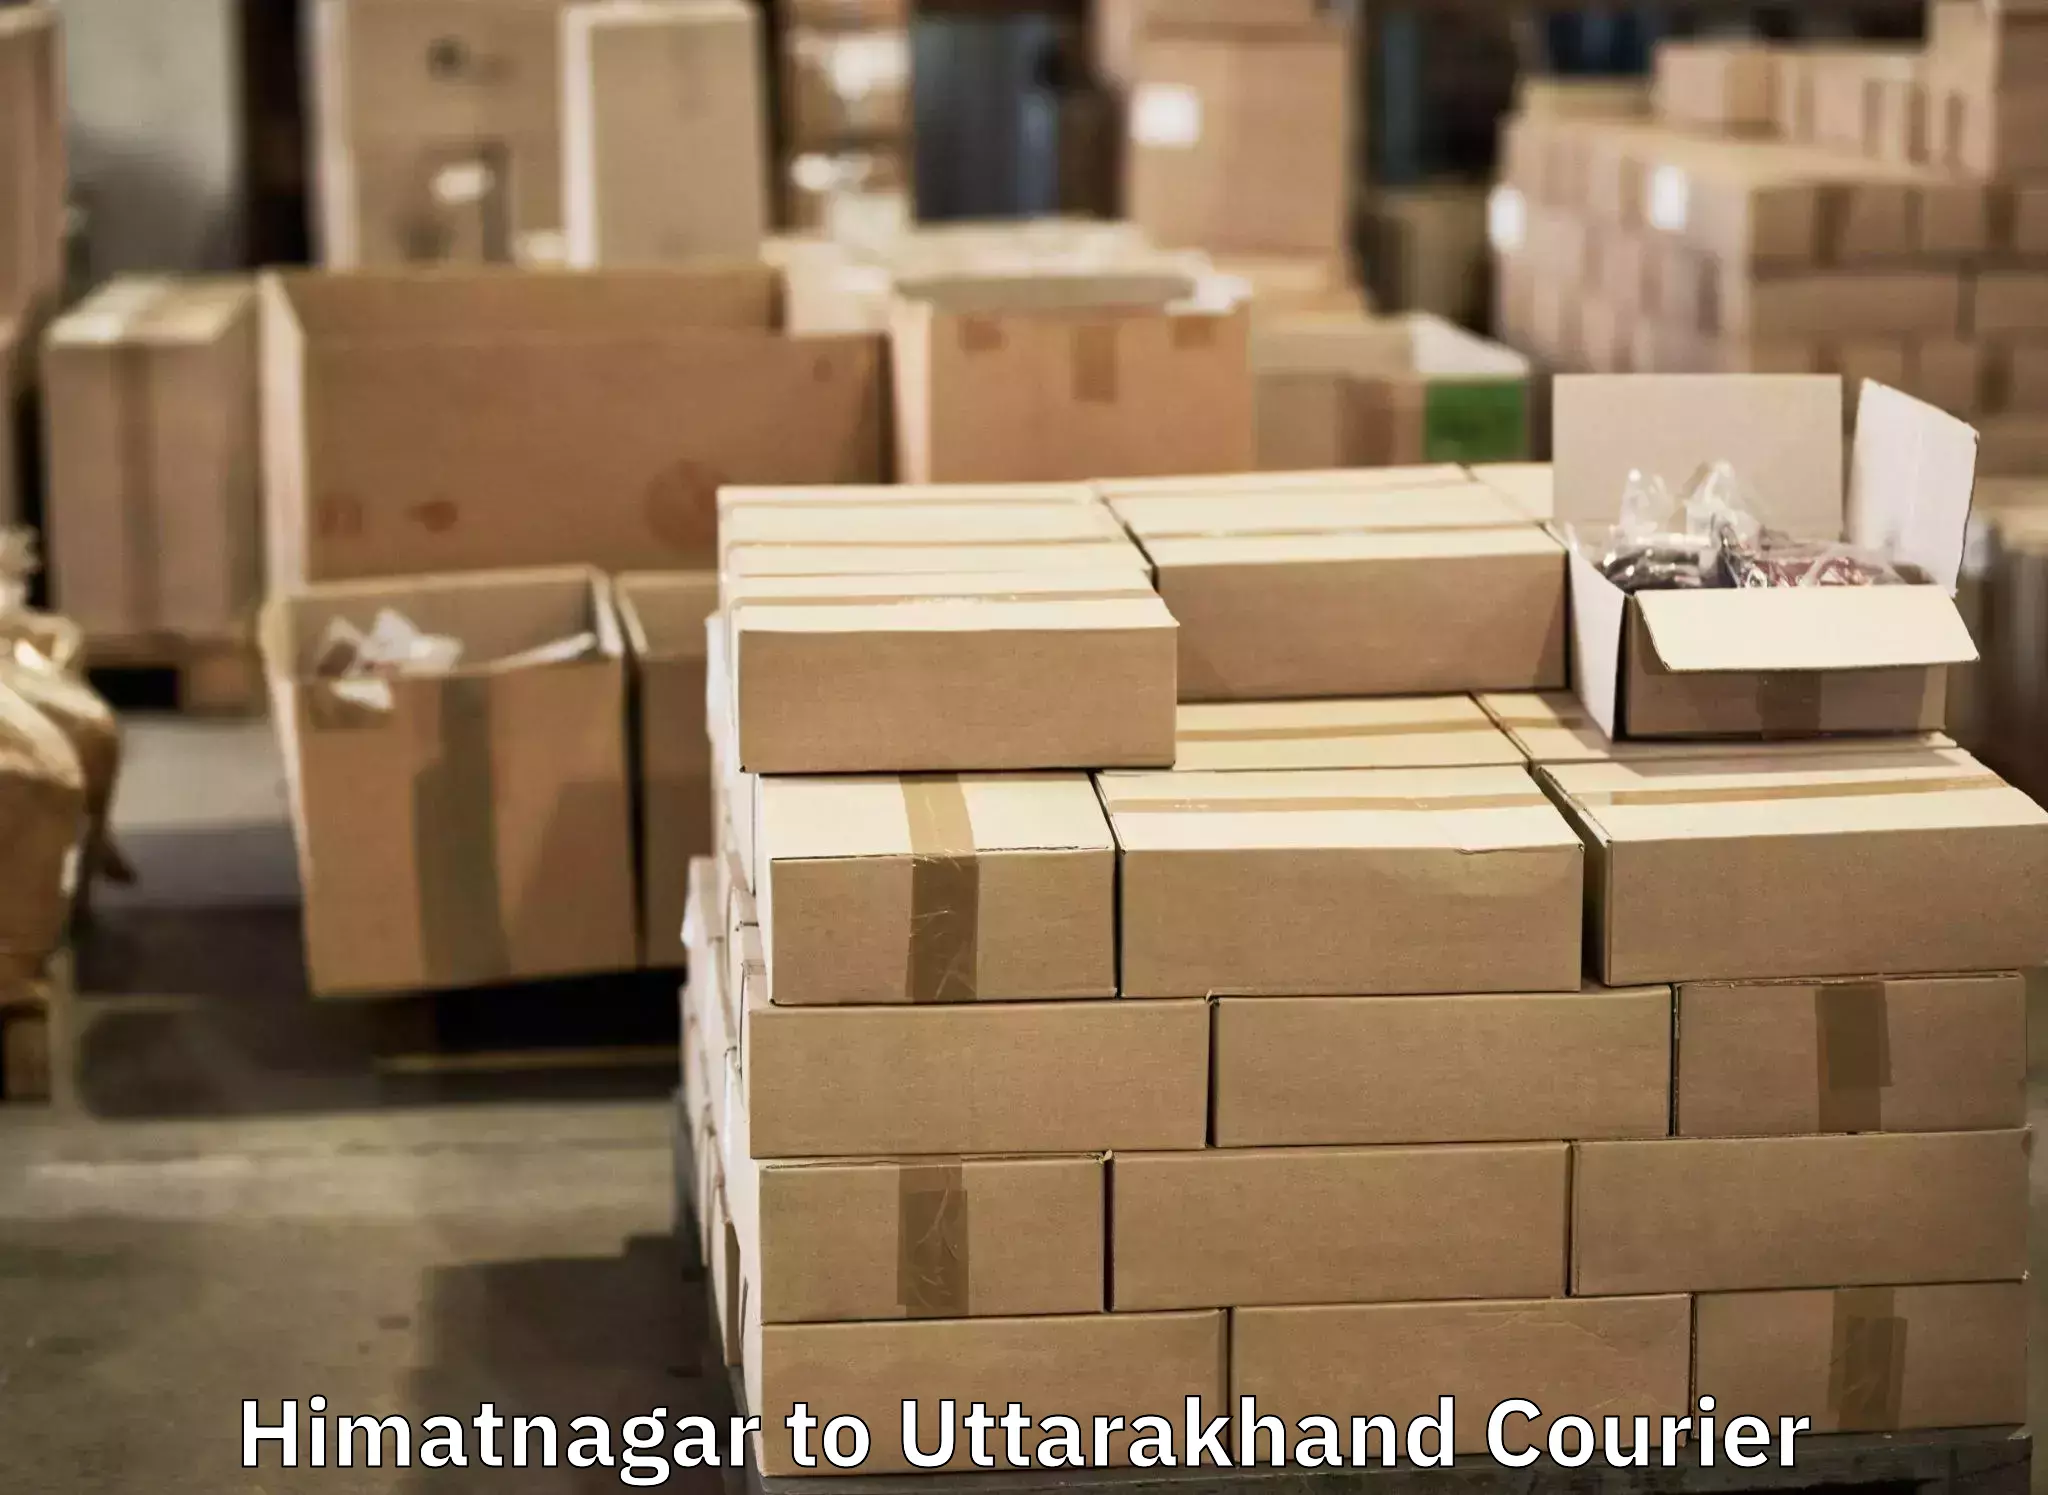 Luggage shipment specialists Himatnagar to IIT Roorkee